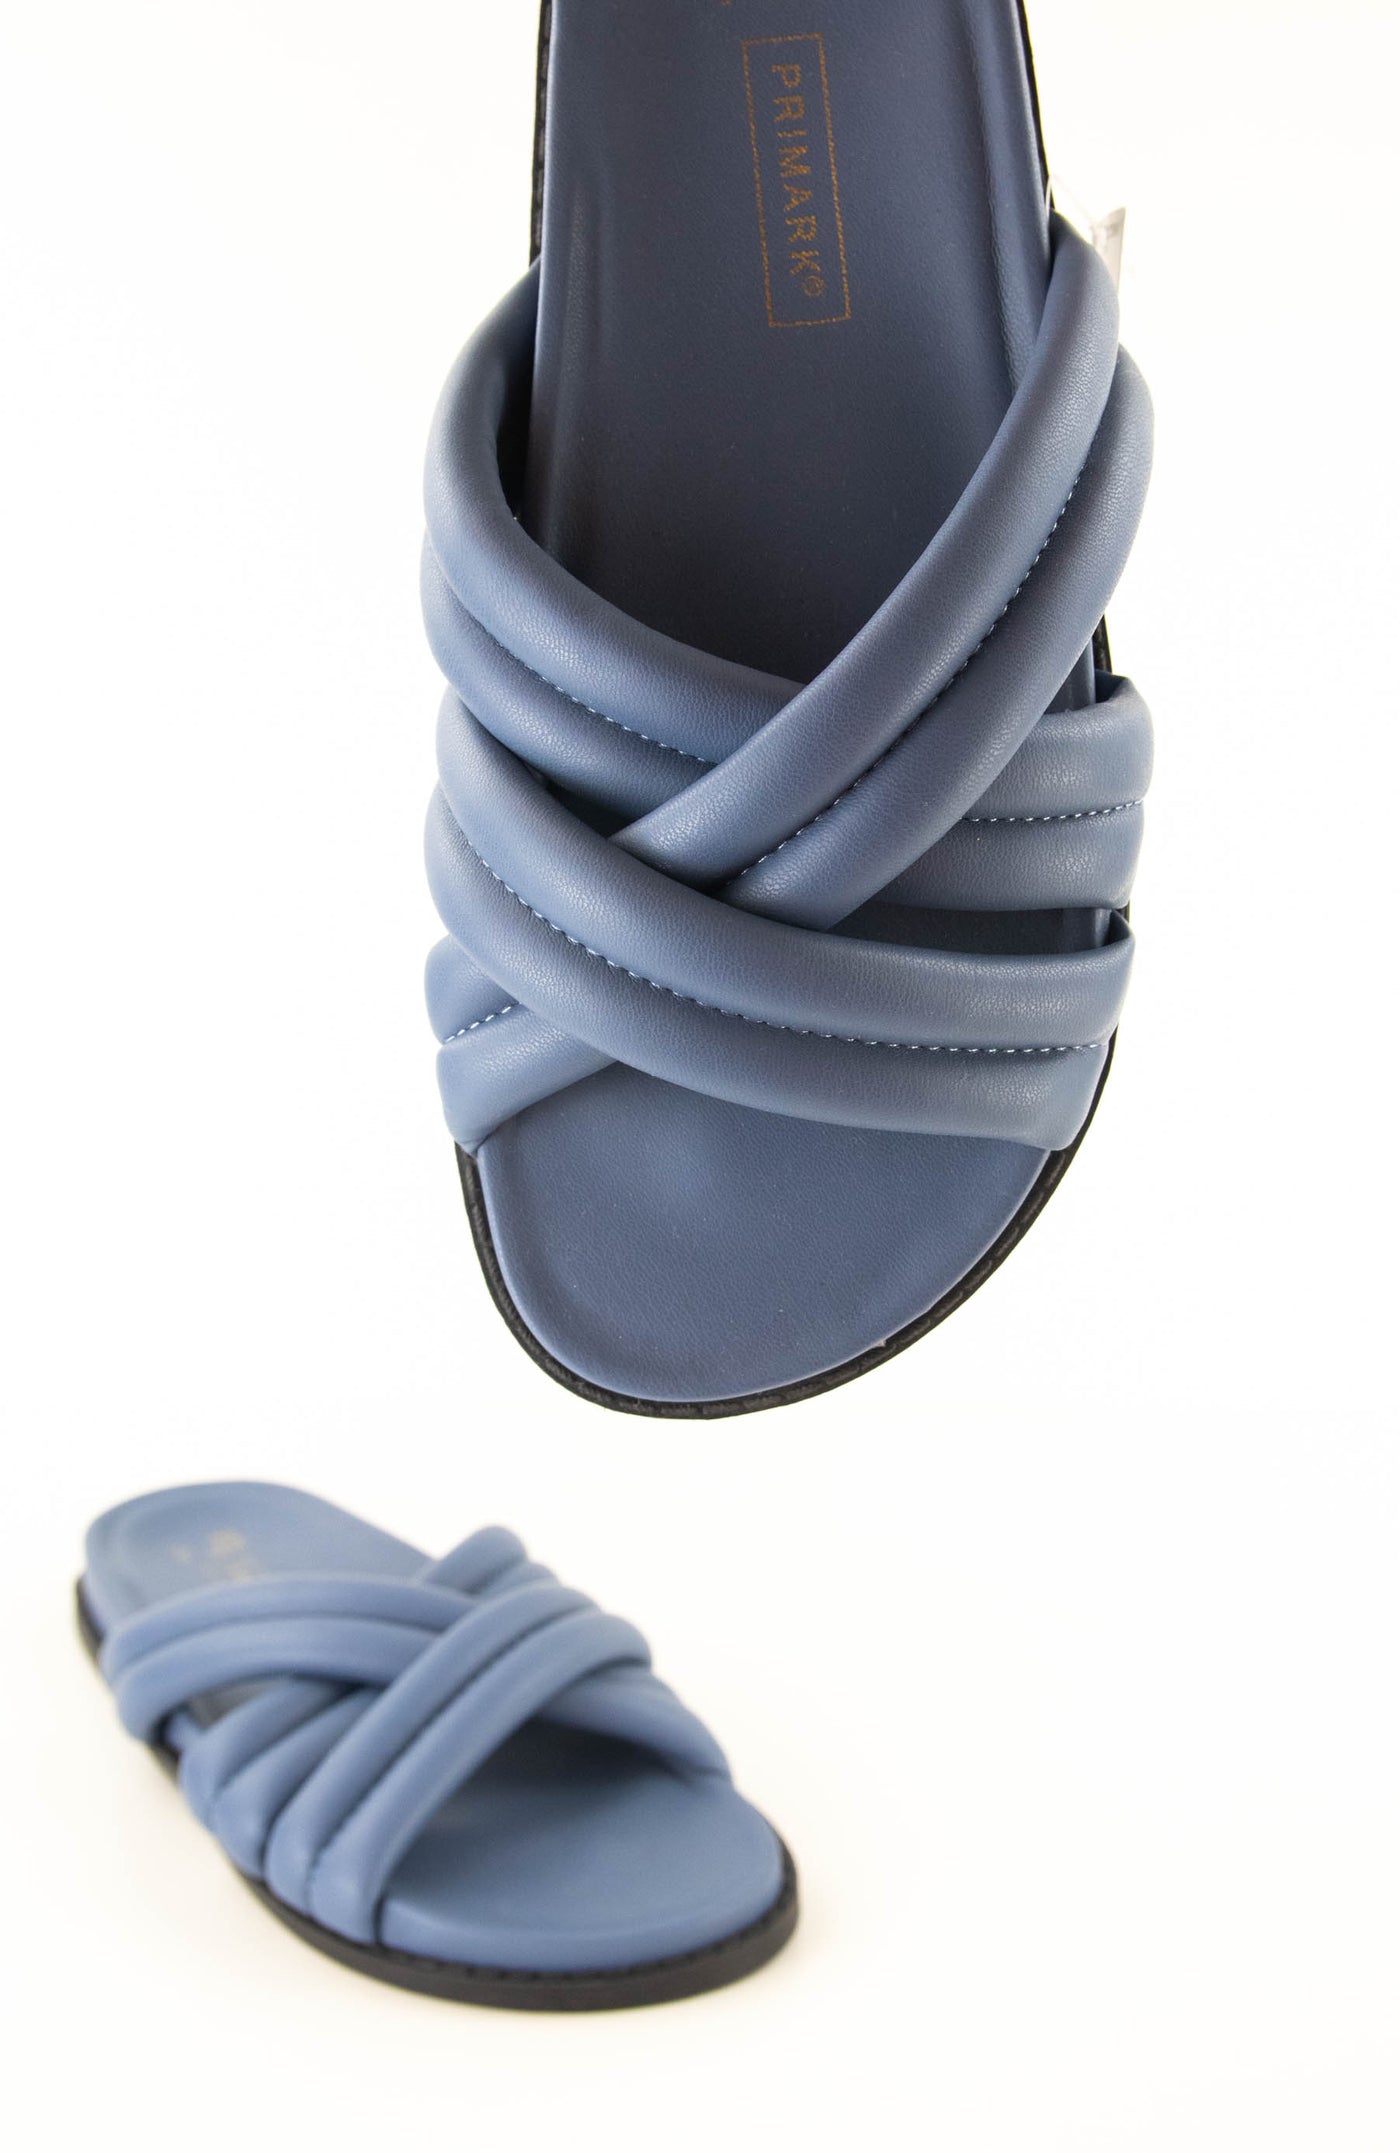 Sandalias acolchadas azules